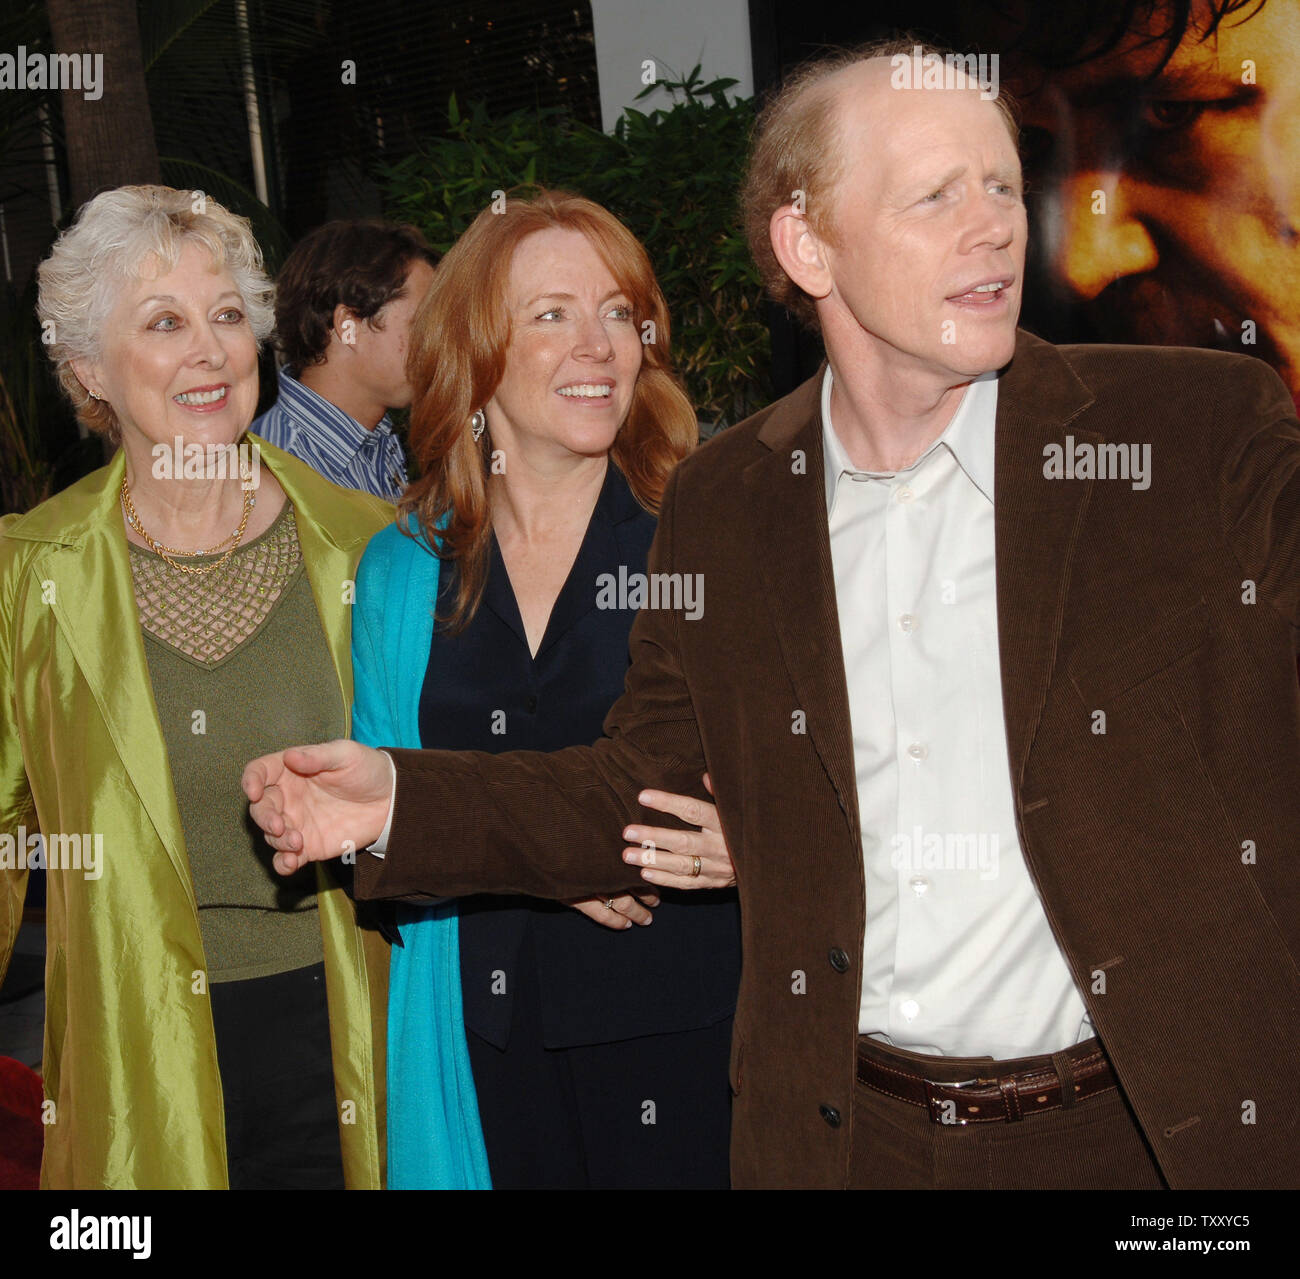 Ron Howard (R), Direktor des neuen Film "Cinderella Man", kommt mit seiner  Frau Cheryl (C) und seiner Mutter, der Schauspielerin Jean Speegle Howard,  bei der Premiere des Films im Universal City" in